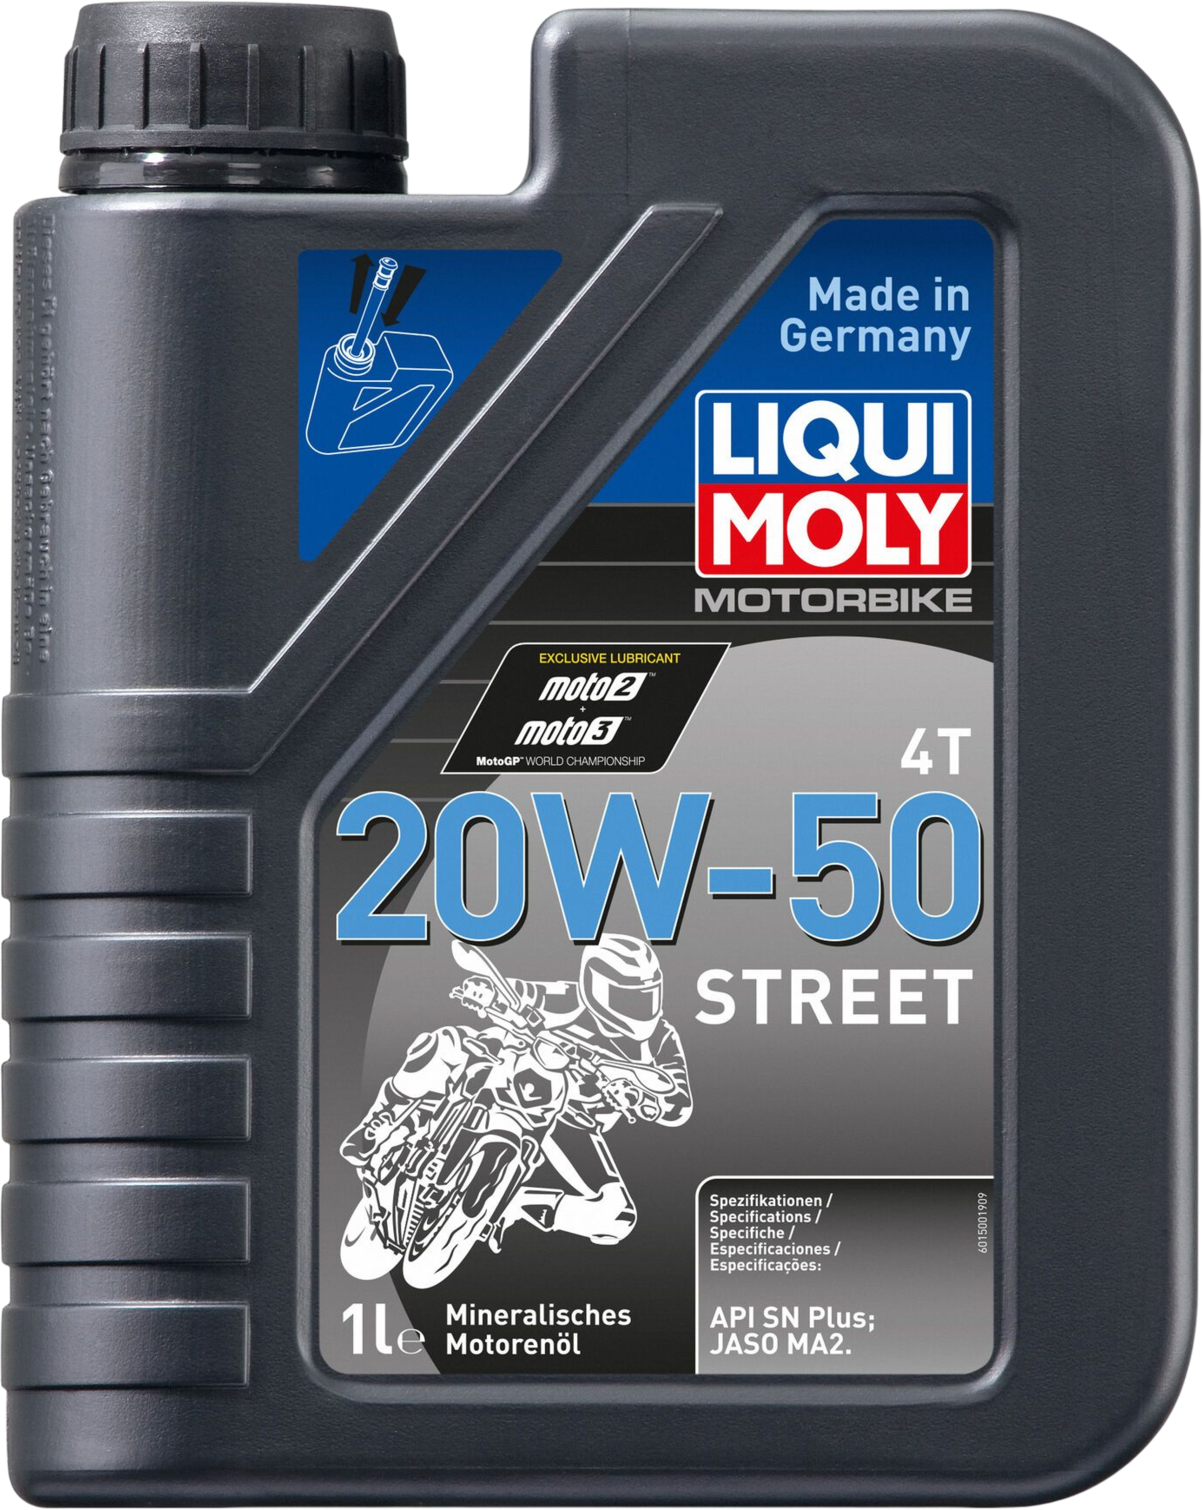 Liqui Moly Motorbike 4T 20W-50 Street, 1 lt